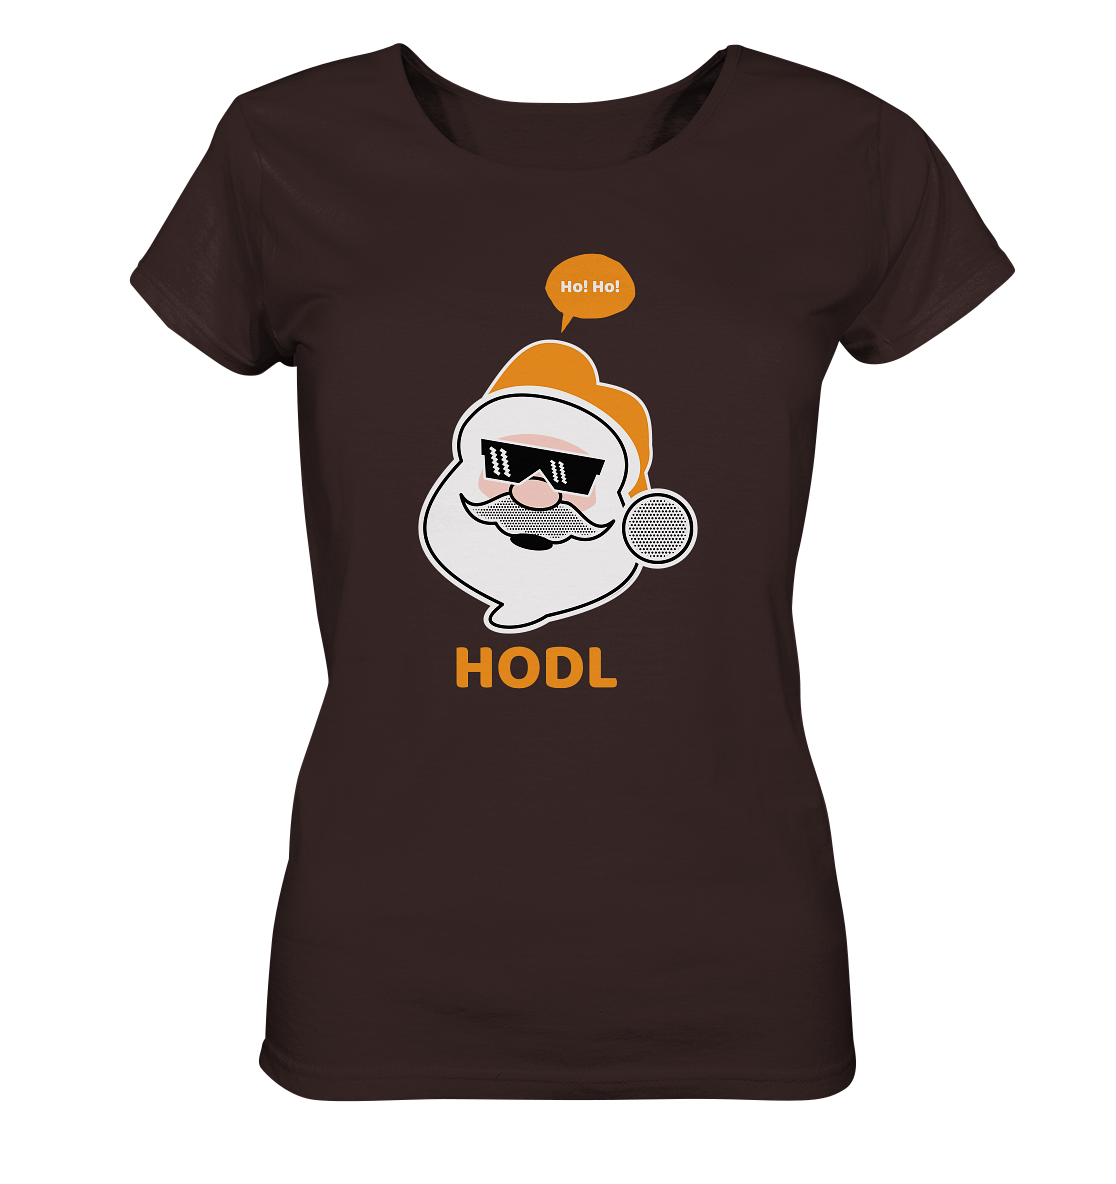 Bitcoin "Ho Ho Hodl" - Ladies Organic Shirt